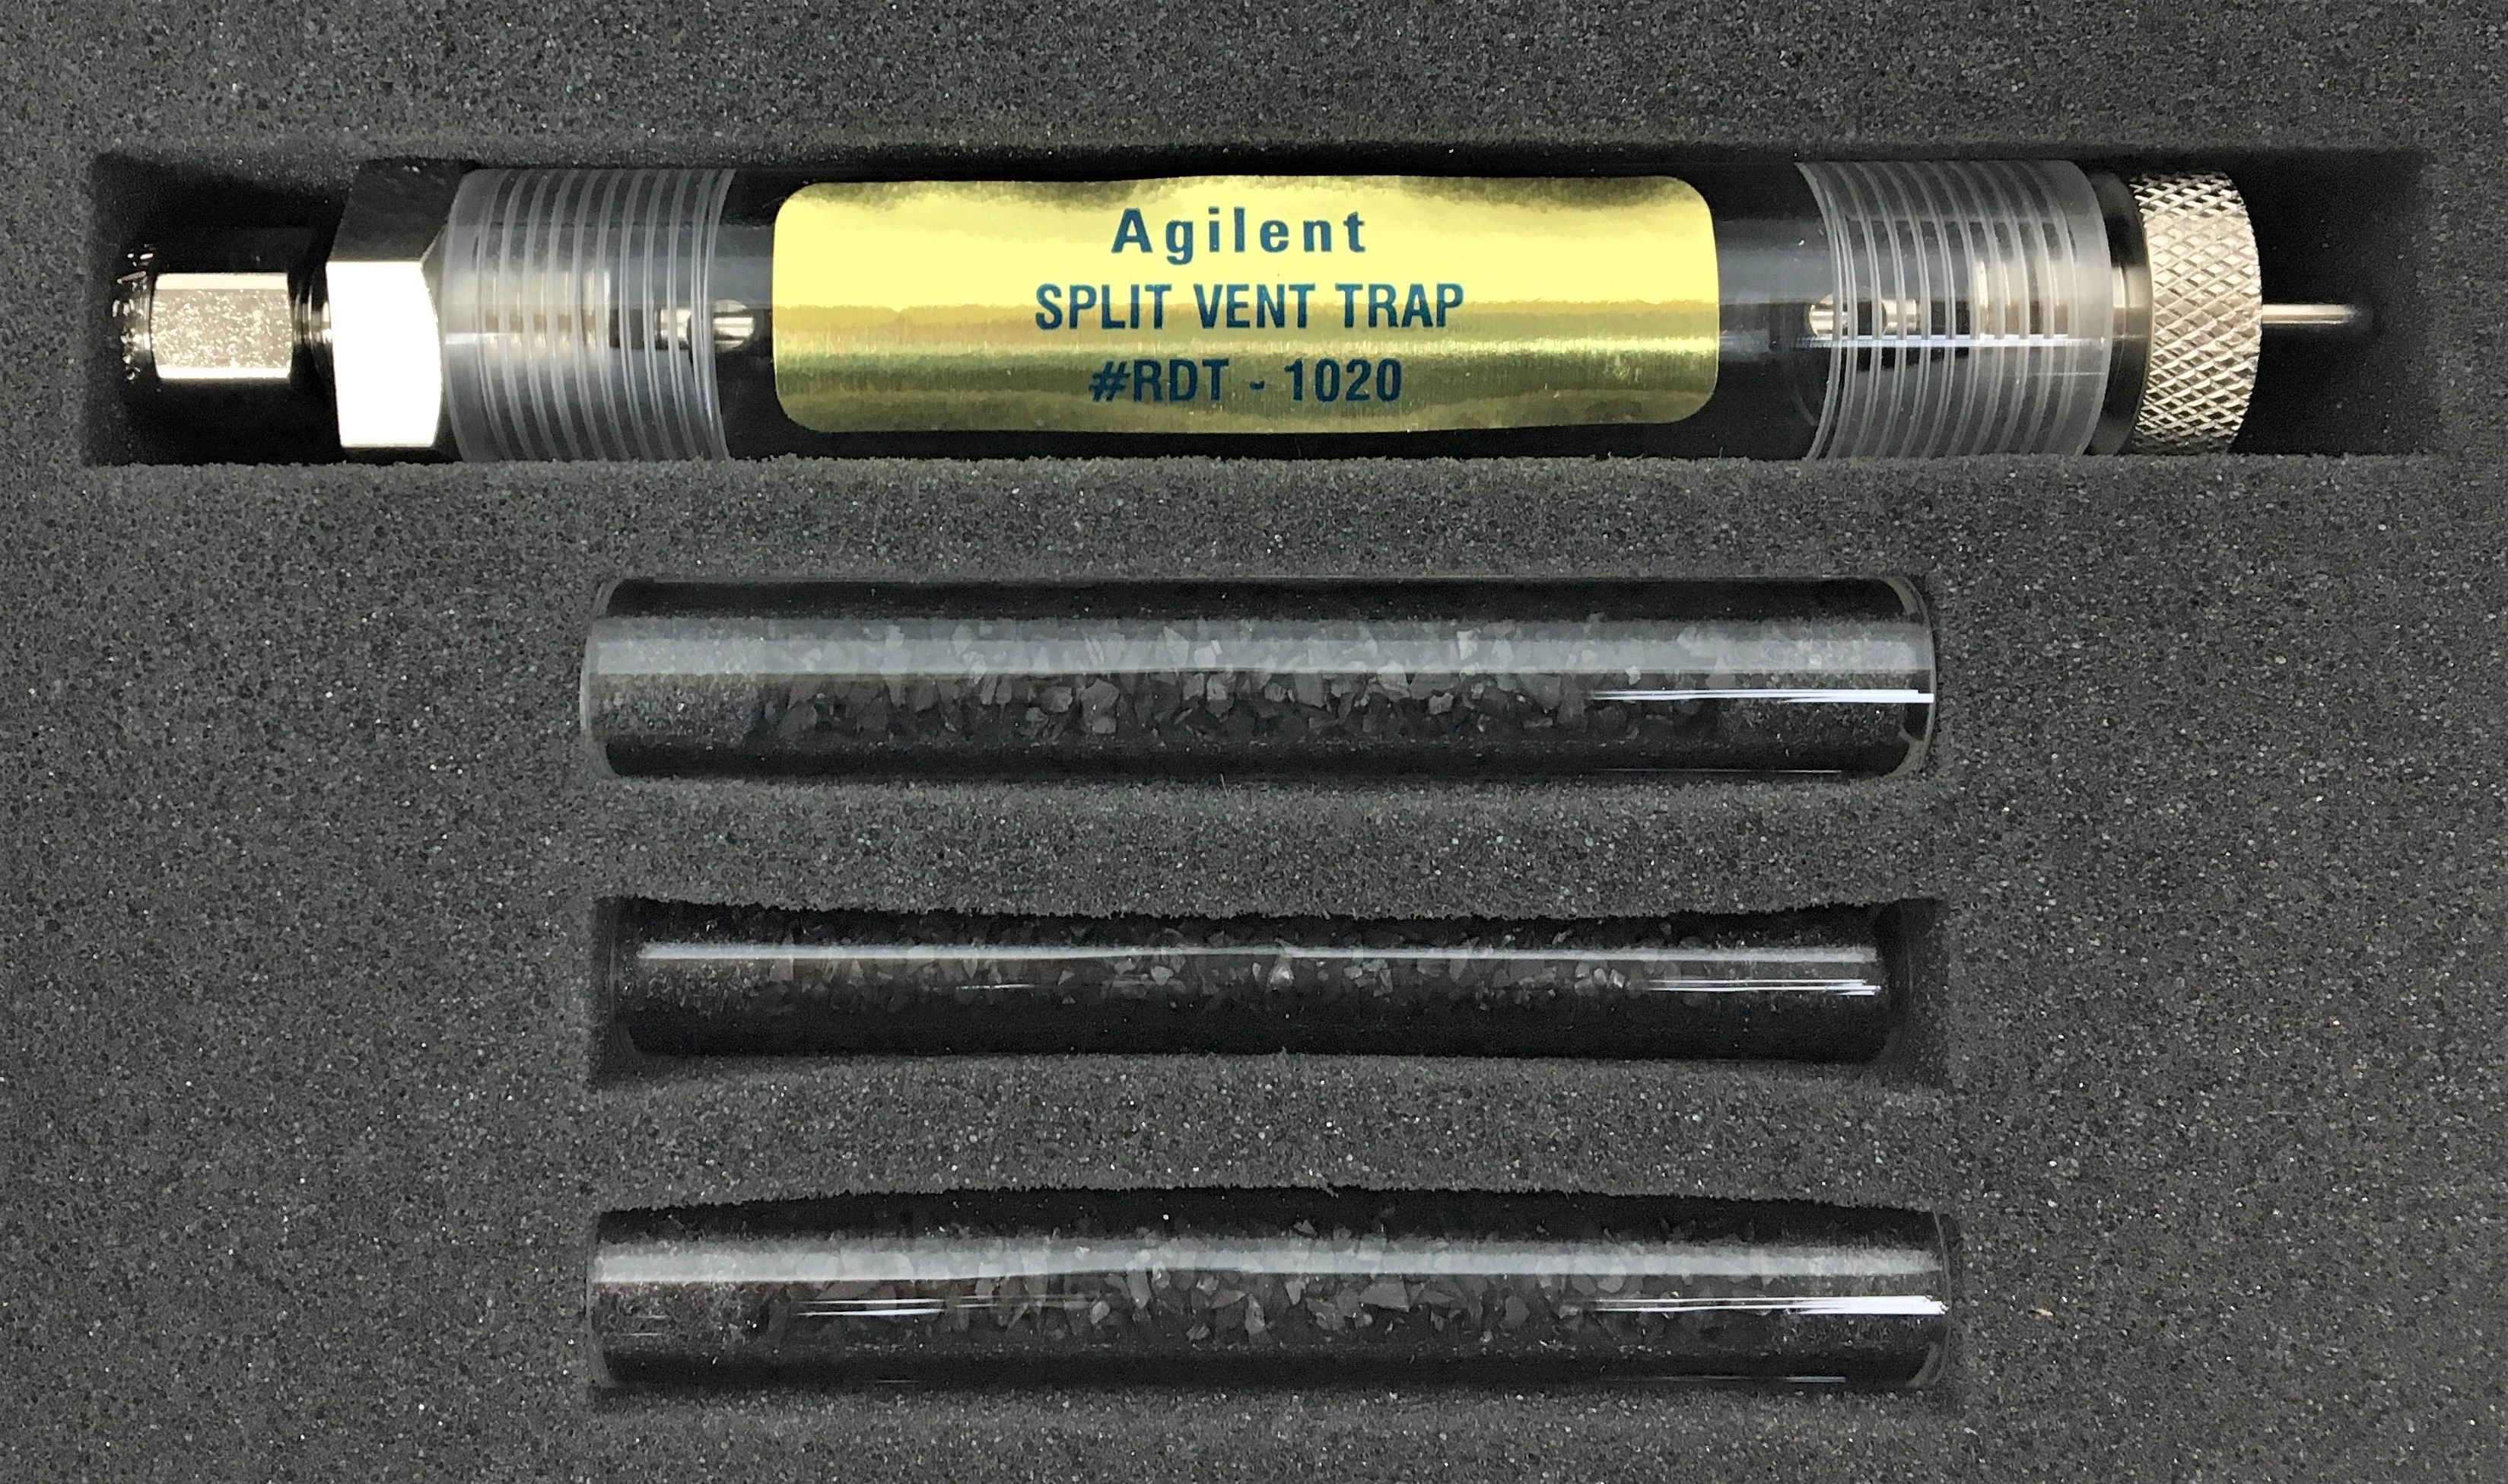 Agilent RDT-1020 Split Vent Trap with 3 Replacement Cartridges